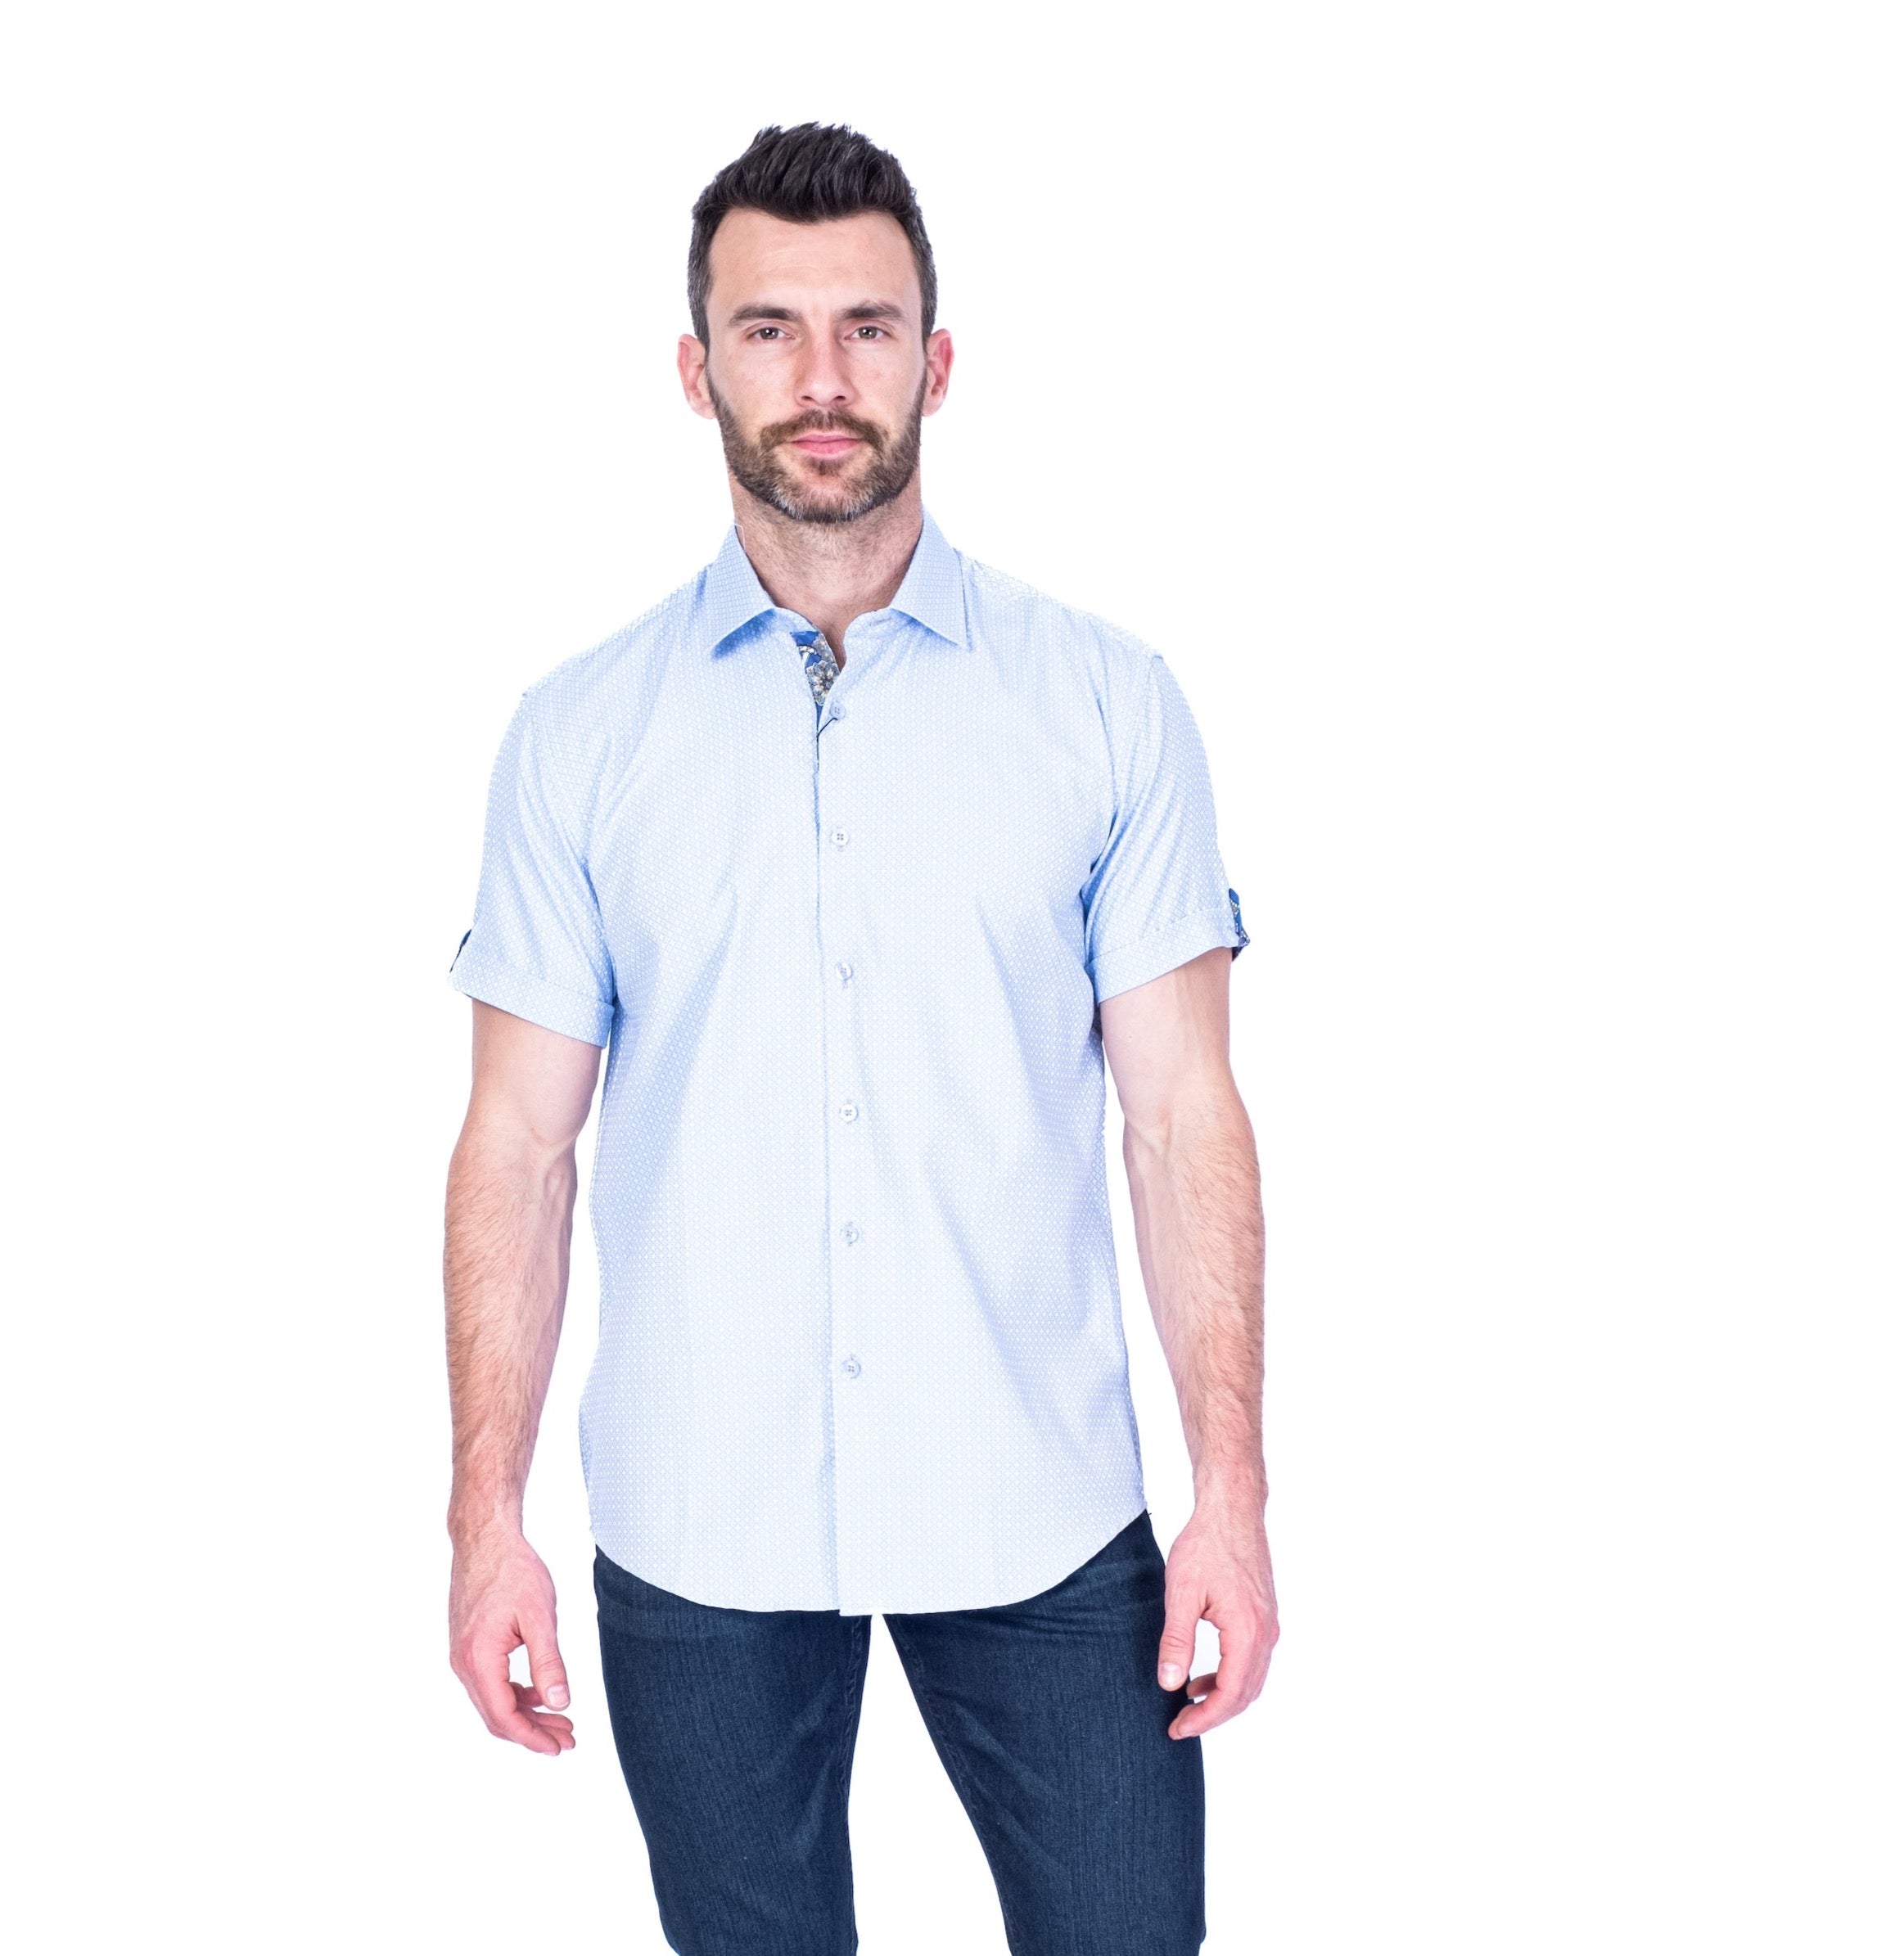 Diamond Print "Steven-S" Short-Sleeve Shirt - Light Blue / White